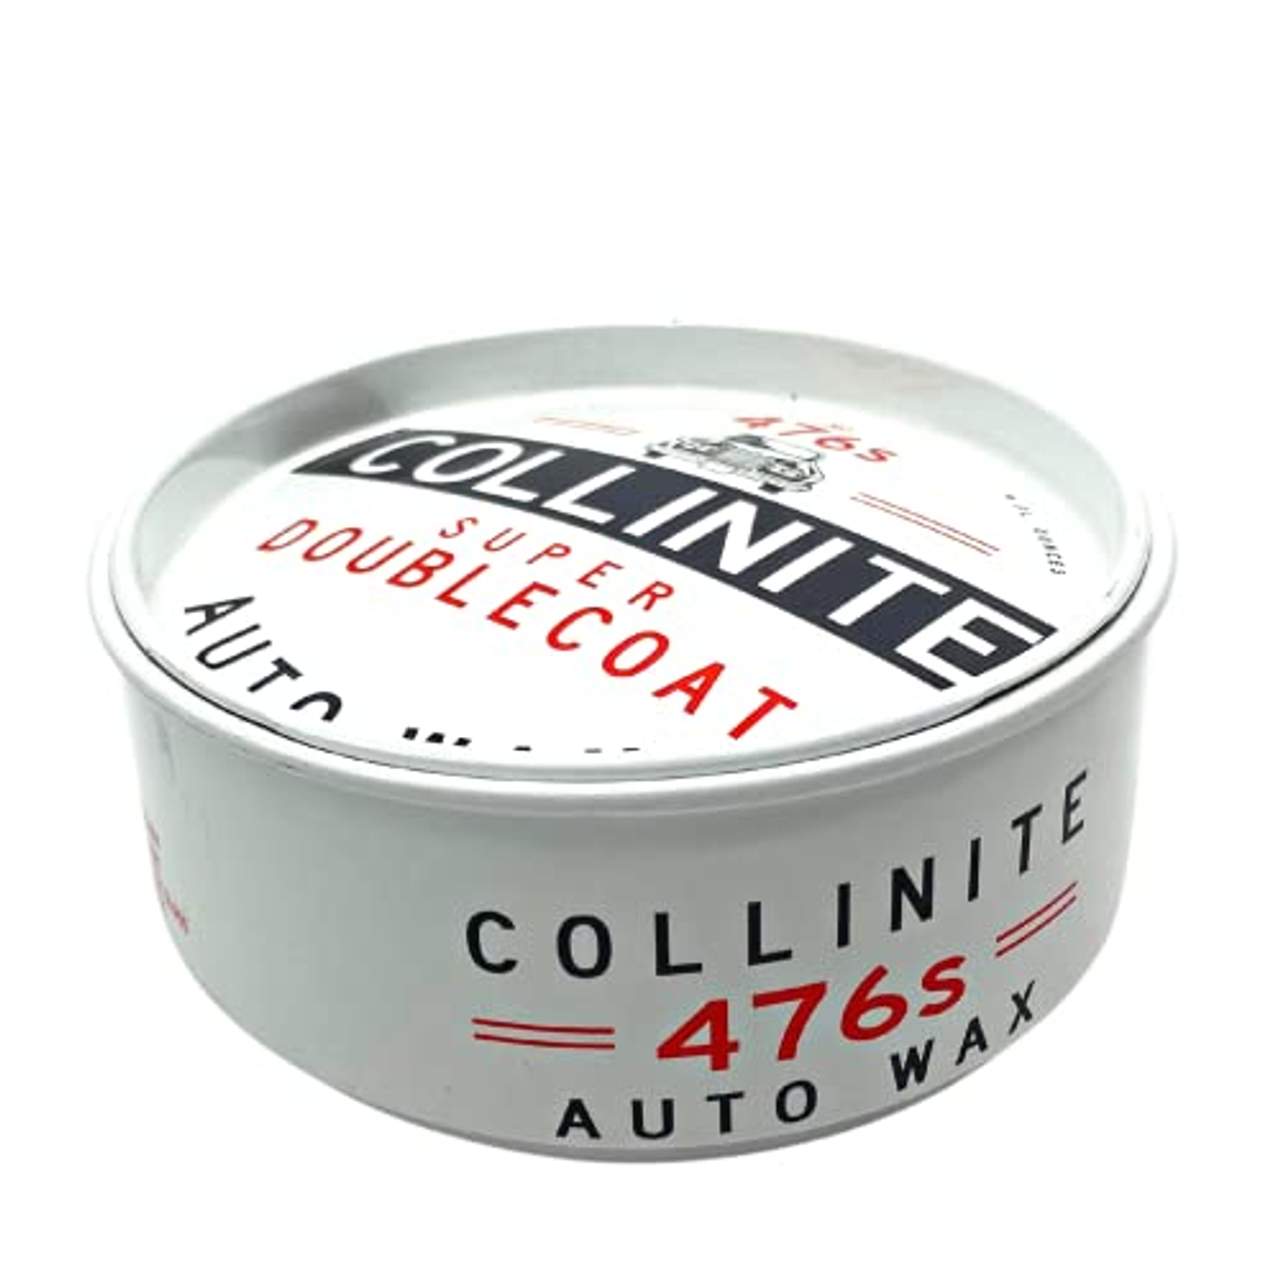 Collinite Super Doublecoat Auto-Wax 266ml